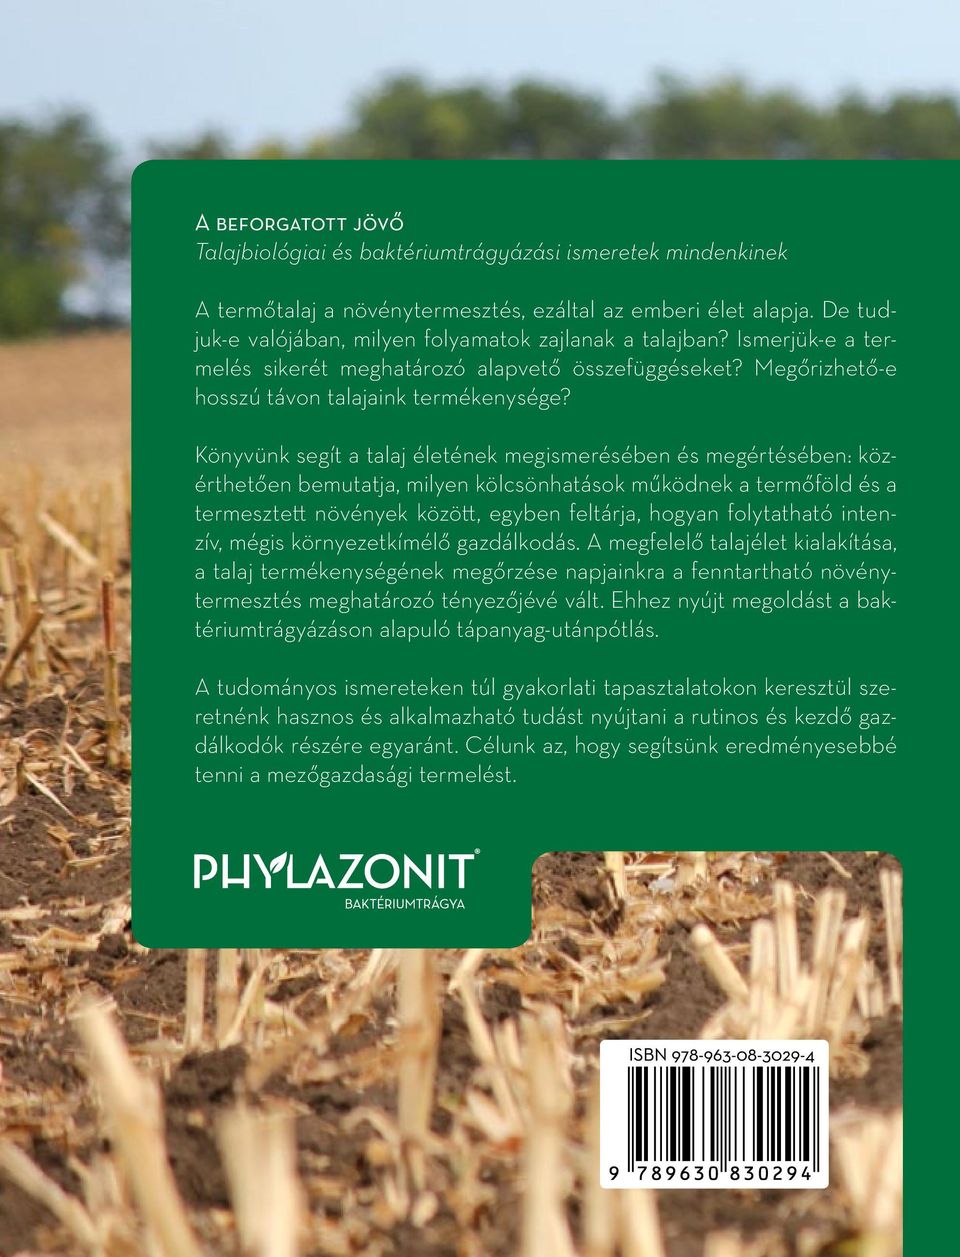 Könyvünk segít a talaj életének megismerésében és megértésében: közérthetően bemutatja, milyen kölcsönhatások működnek a termőföld és a termesztett növények között, egyben feltárja, hogyan